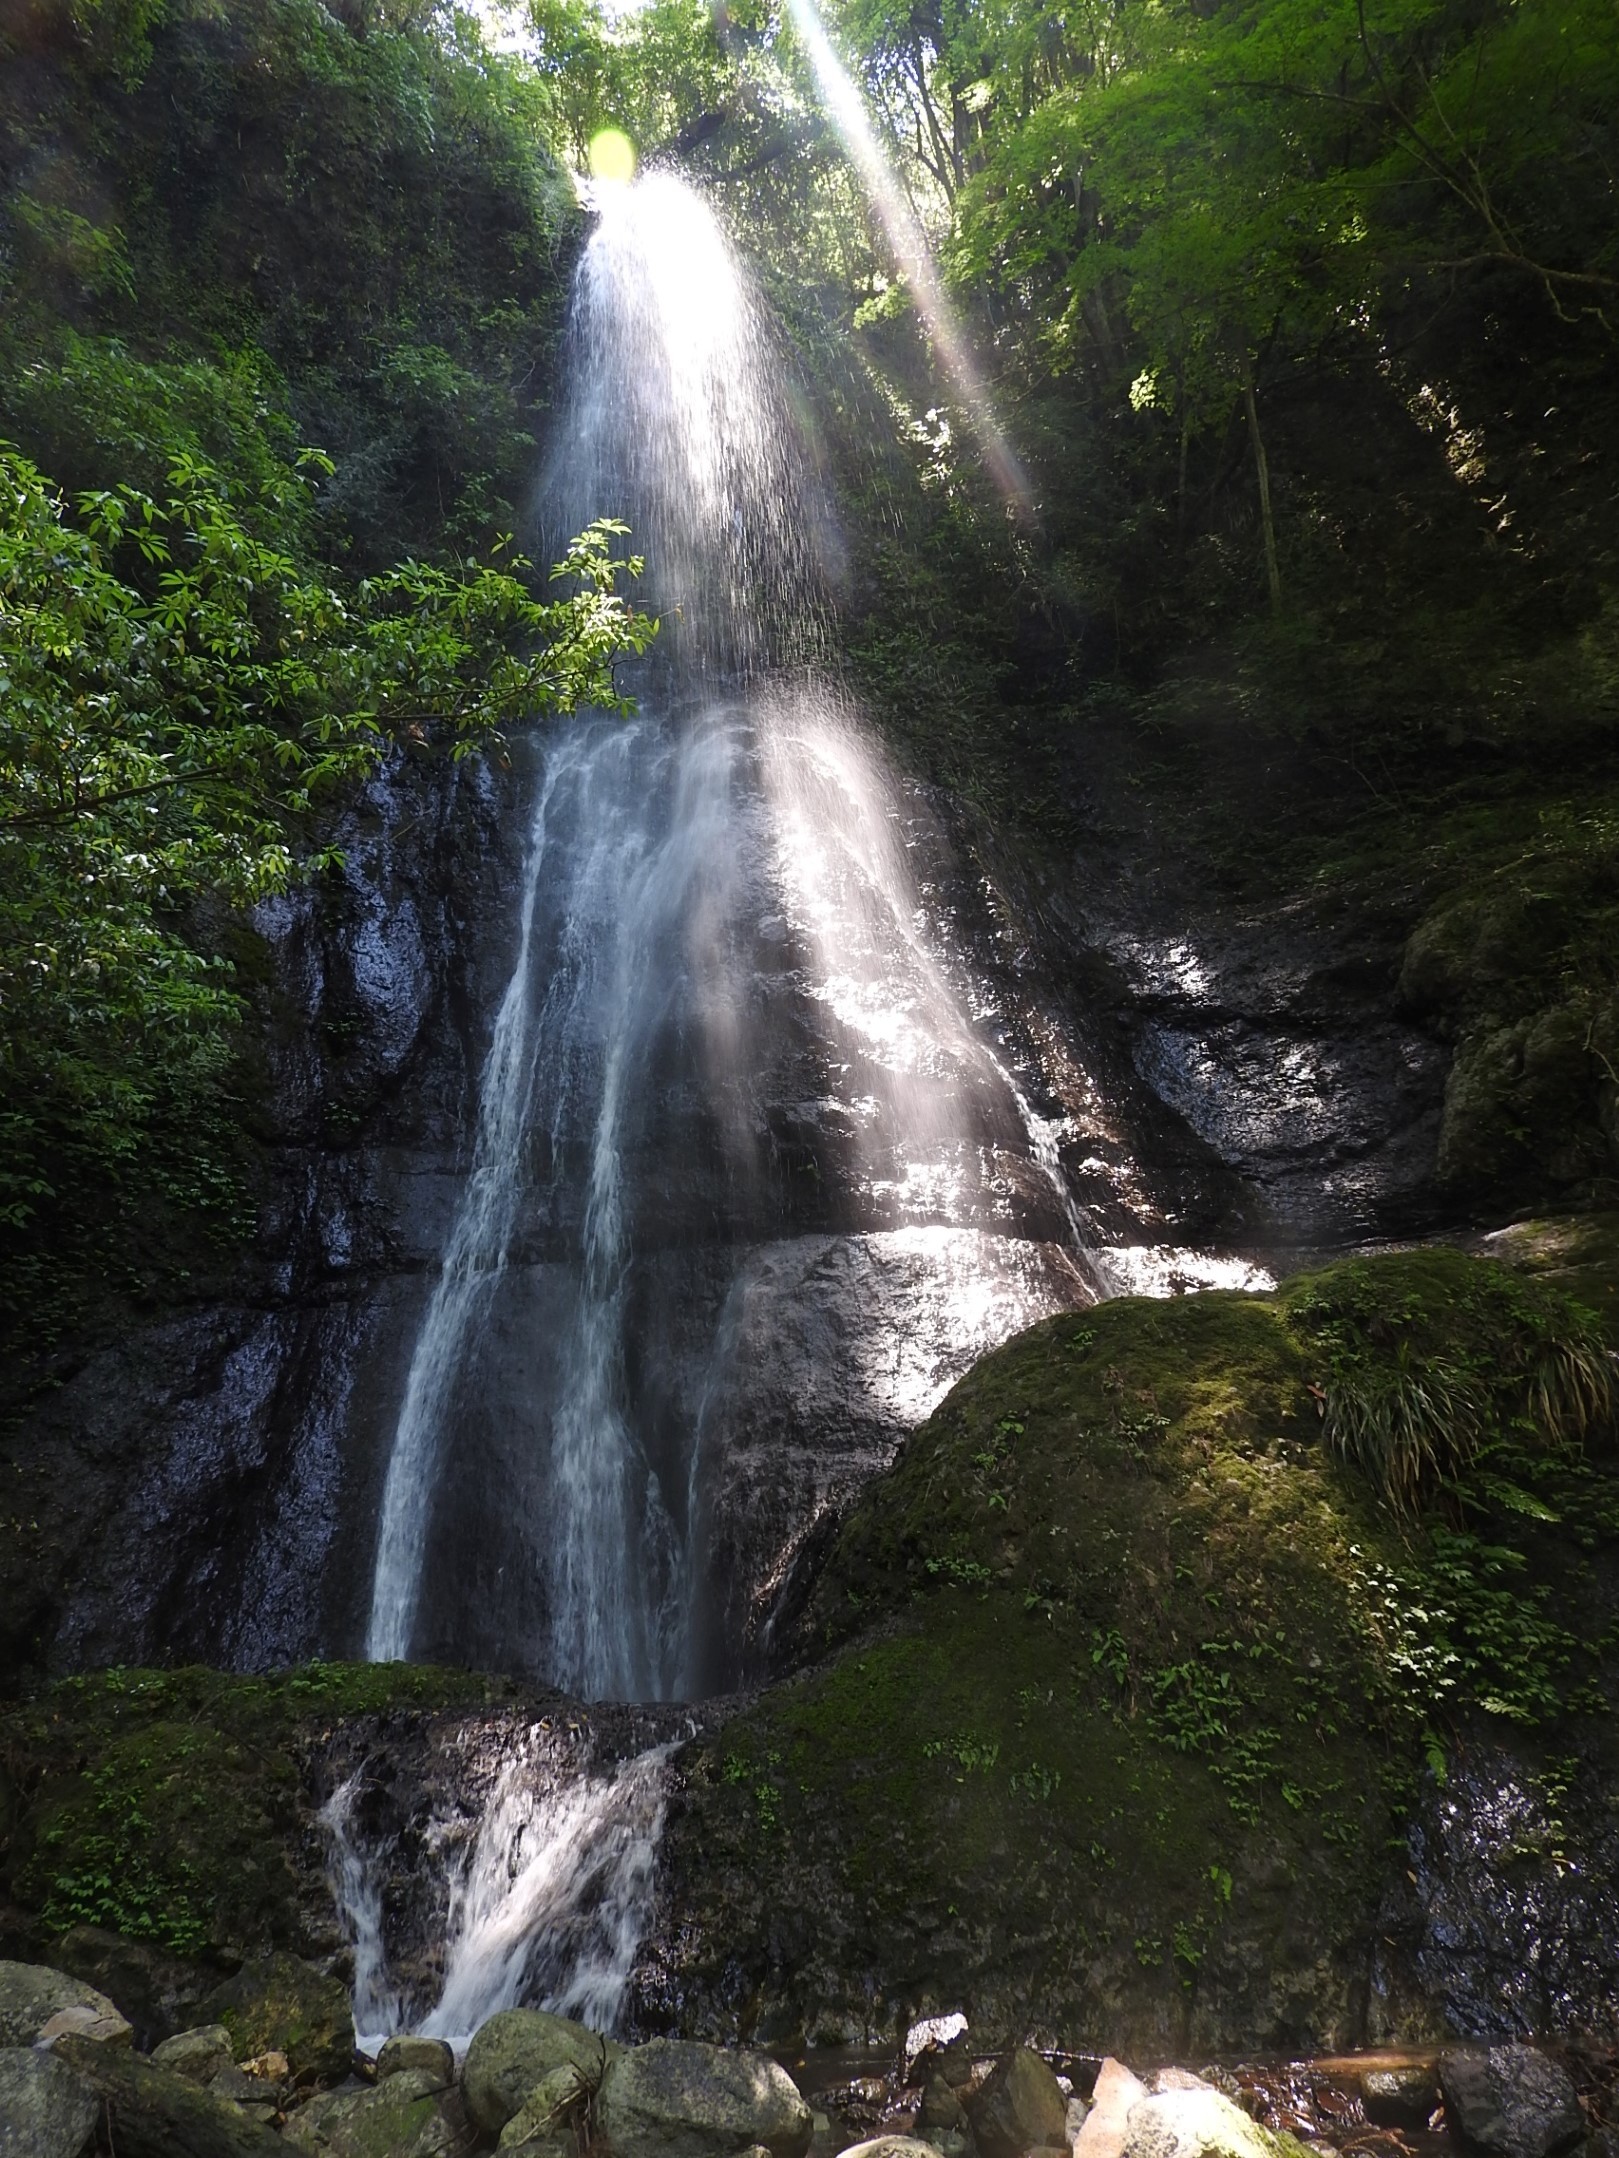 【１】東伊豆町を流れる白田川は水力発電所の下方で川久保川が分岐し、本流の取水口から上流が堰口（せきぐち）川。取水口の下流から分岐した小支流にウスバタの滝がある。林道から巨岩の目立つ山中を３０分ほど歩いた先に高さ３０メートルほどの美しい滝があり、名前の通り